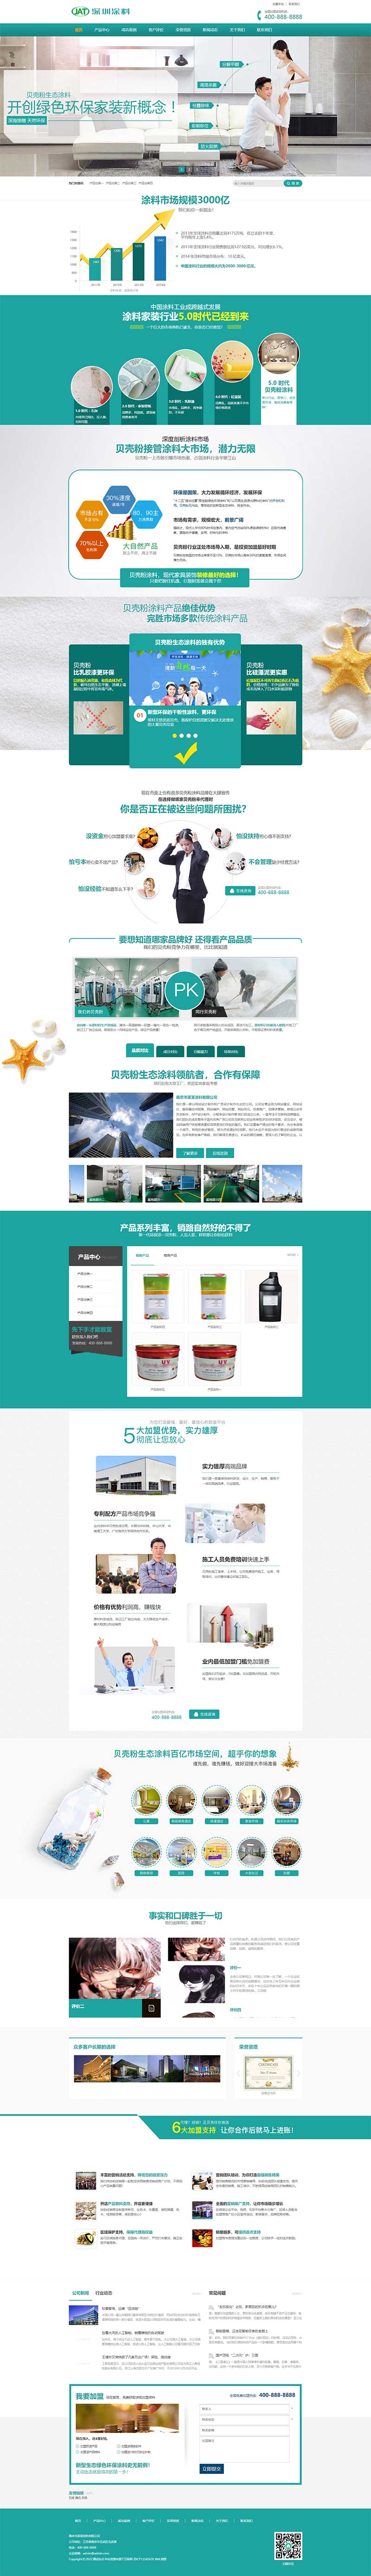 营销型环保贝壳粉生态涂料青色油漆涂料pbootcms网站模板(PC+WAP)-1